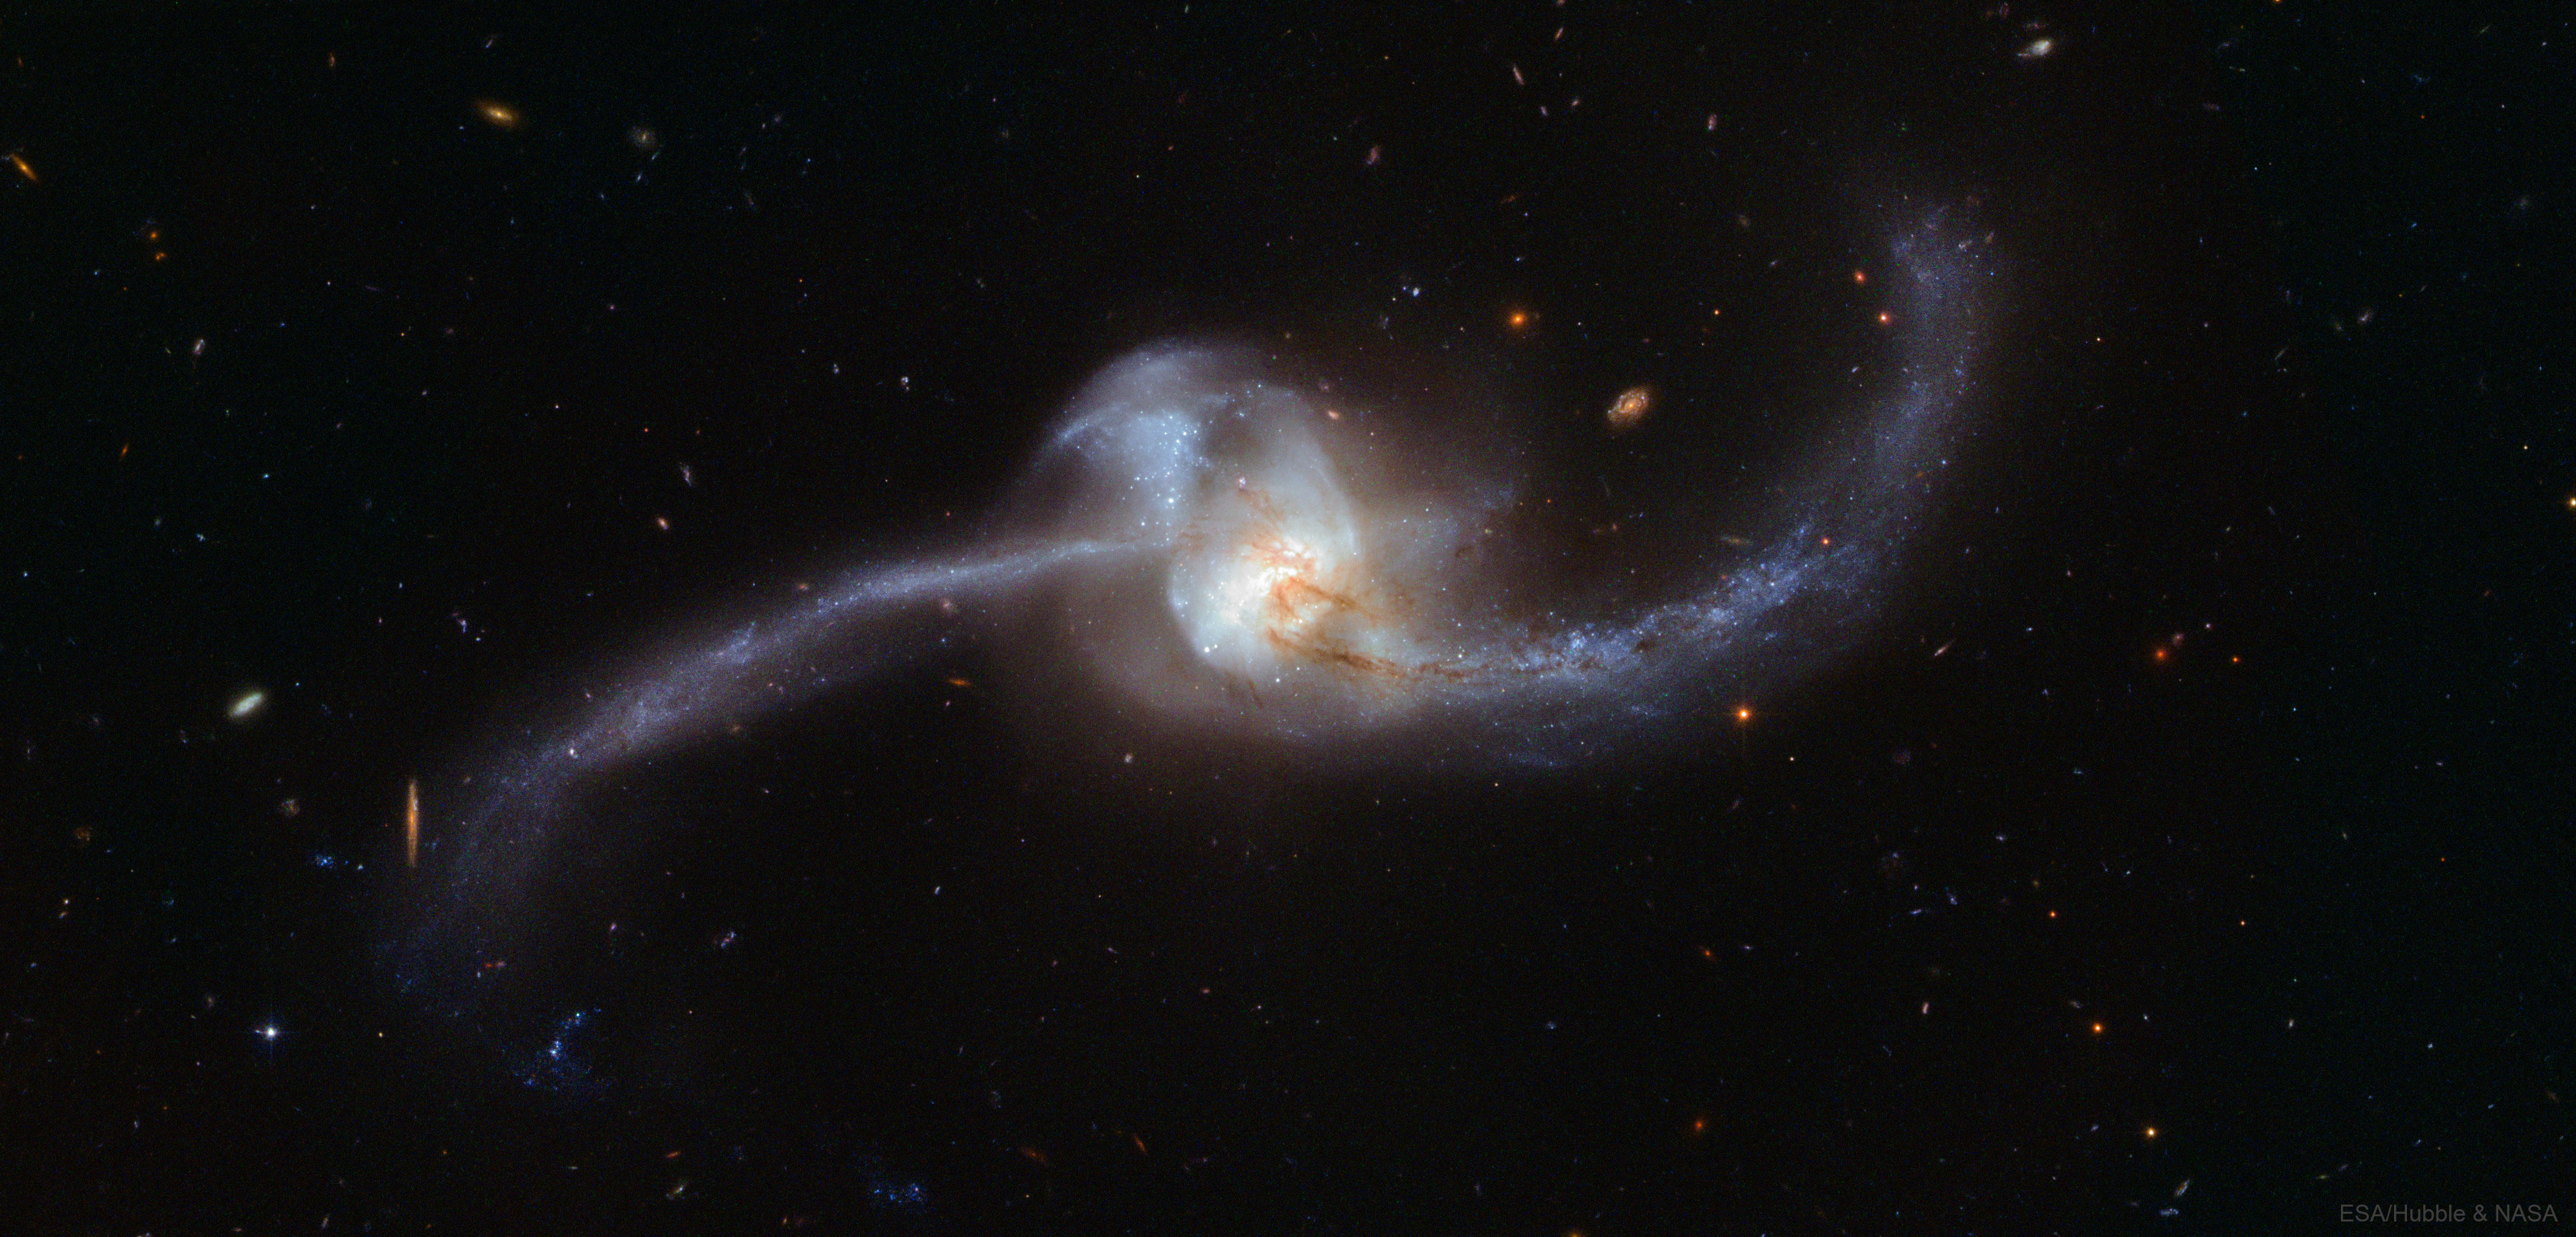 Arp243_Hubble_3978.jpg